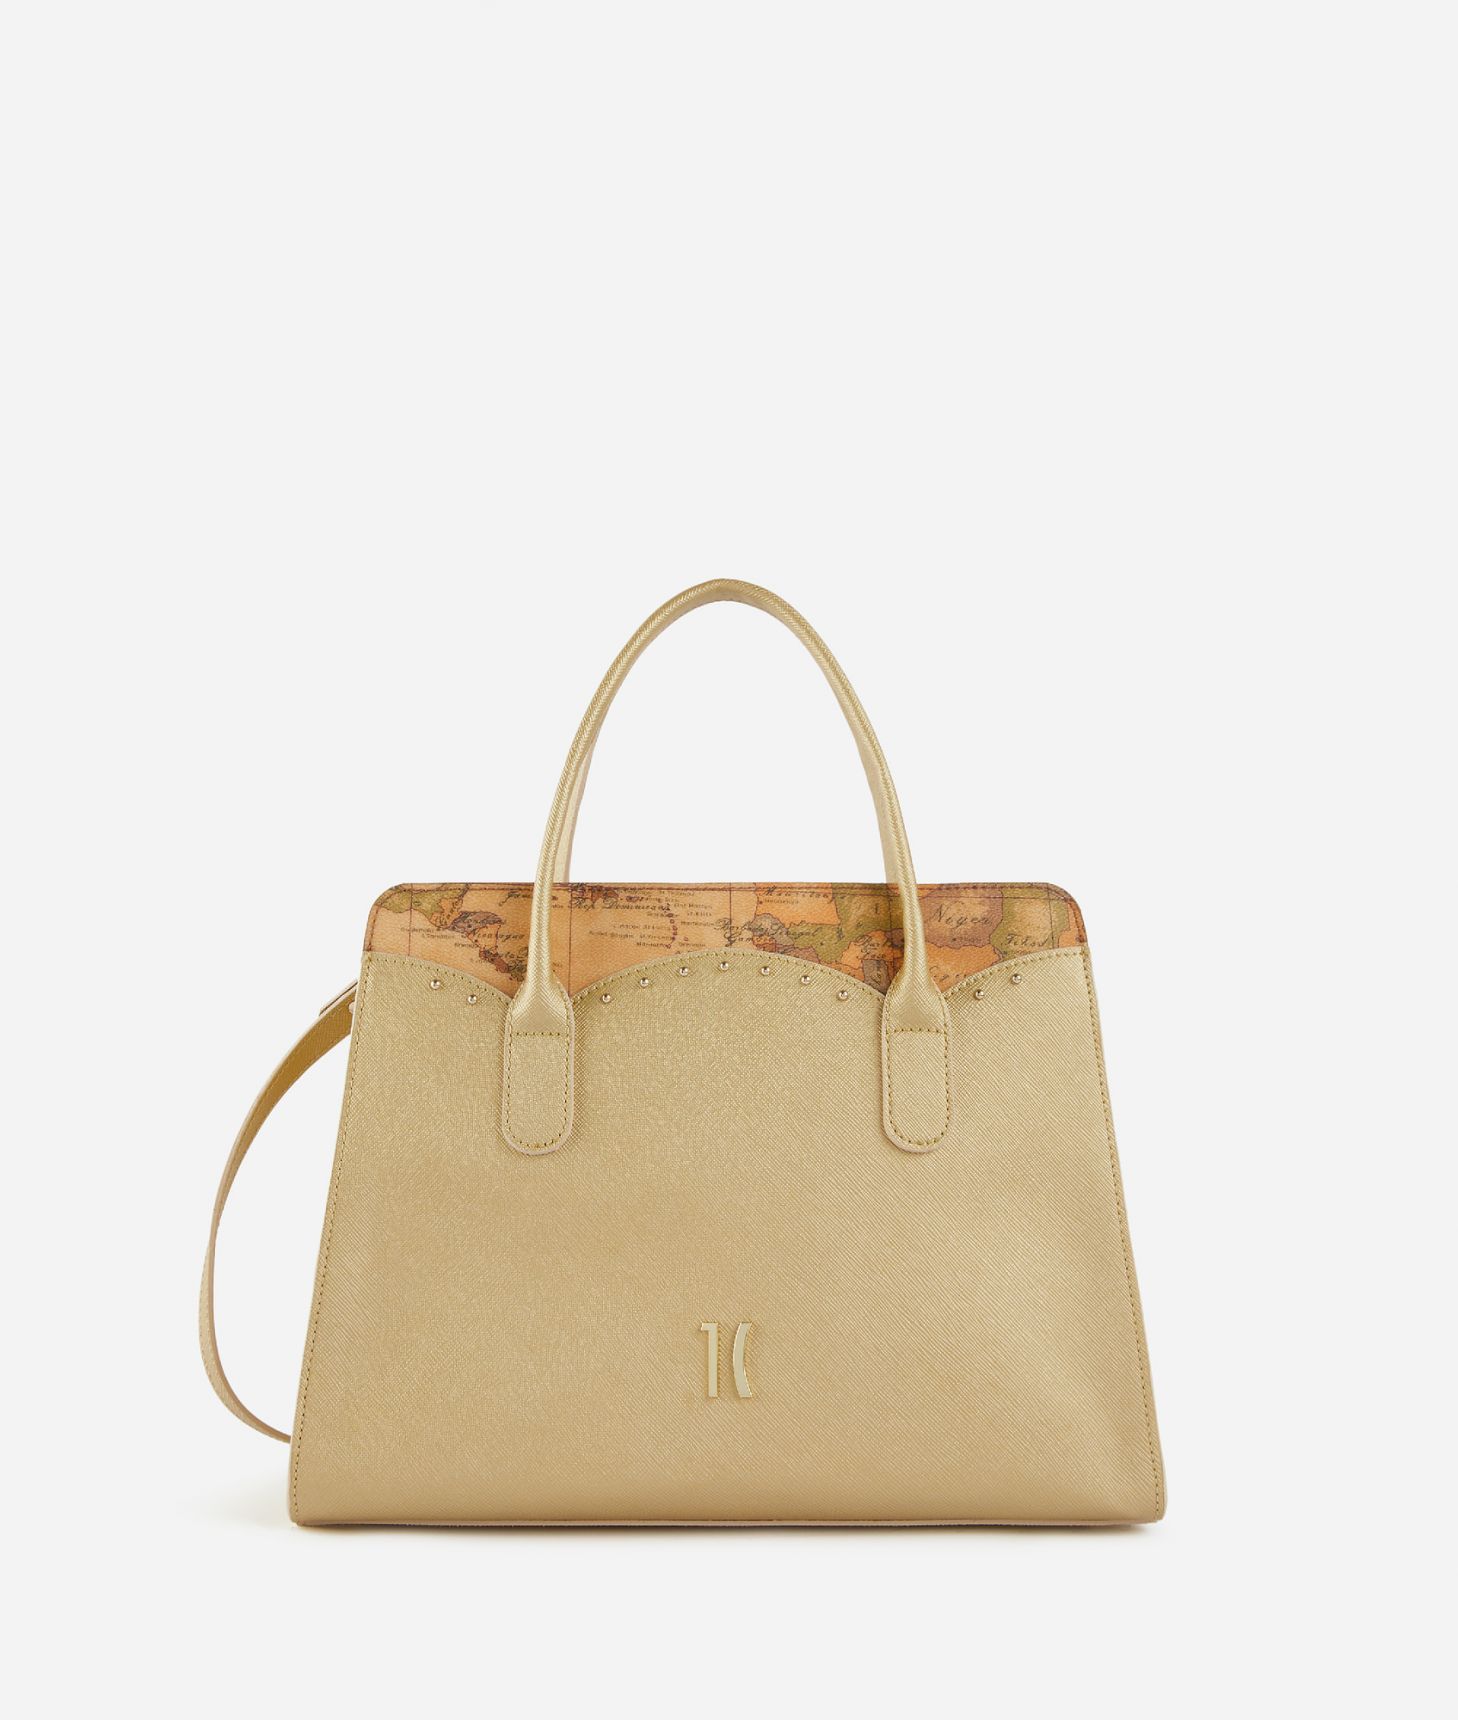 City Lights handbag with shoulder strap Light Gold,front